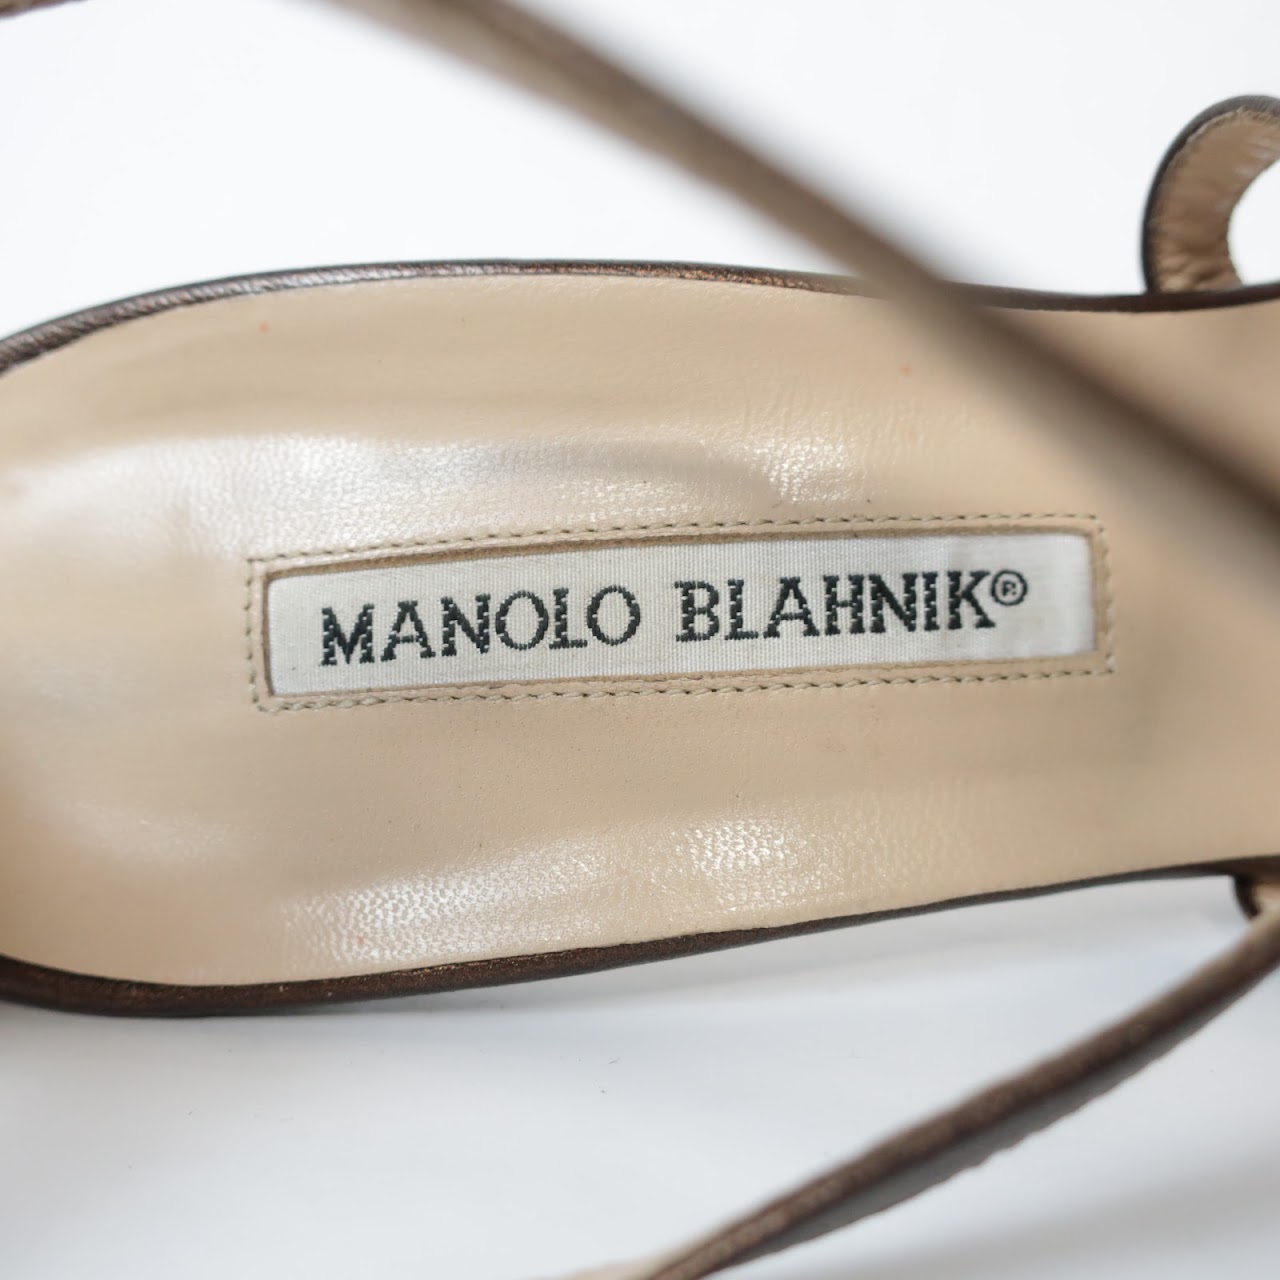 Manolo Blahnik Strappy Sandals